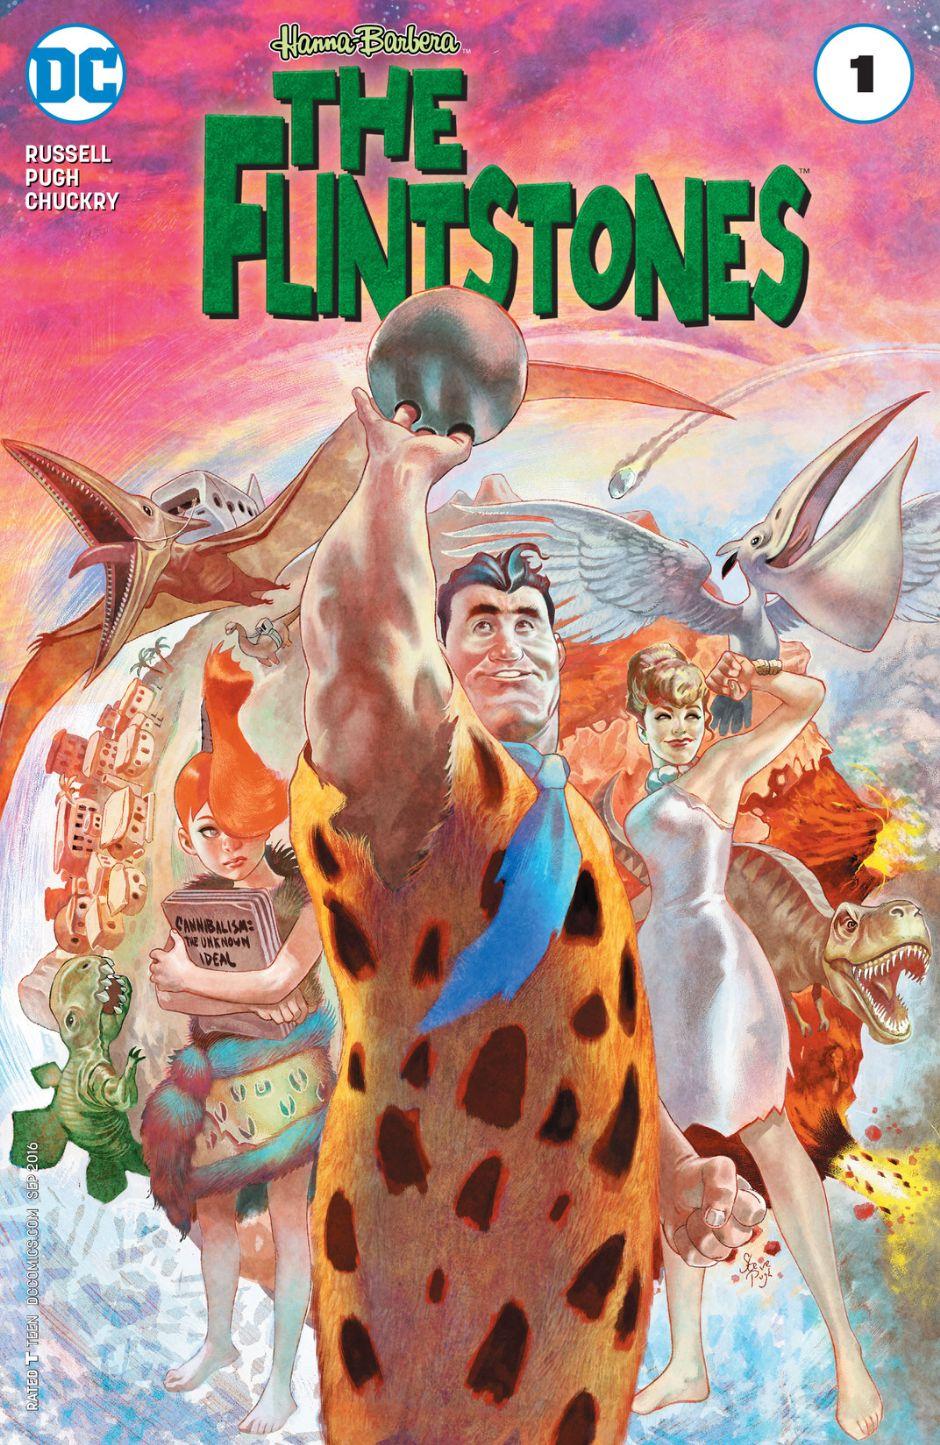 The Flintstones Vol. 1 #1